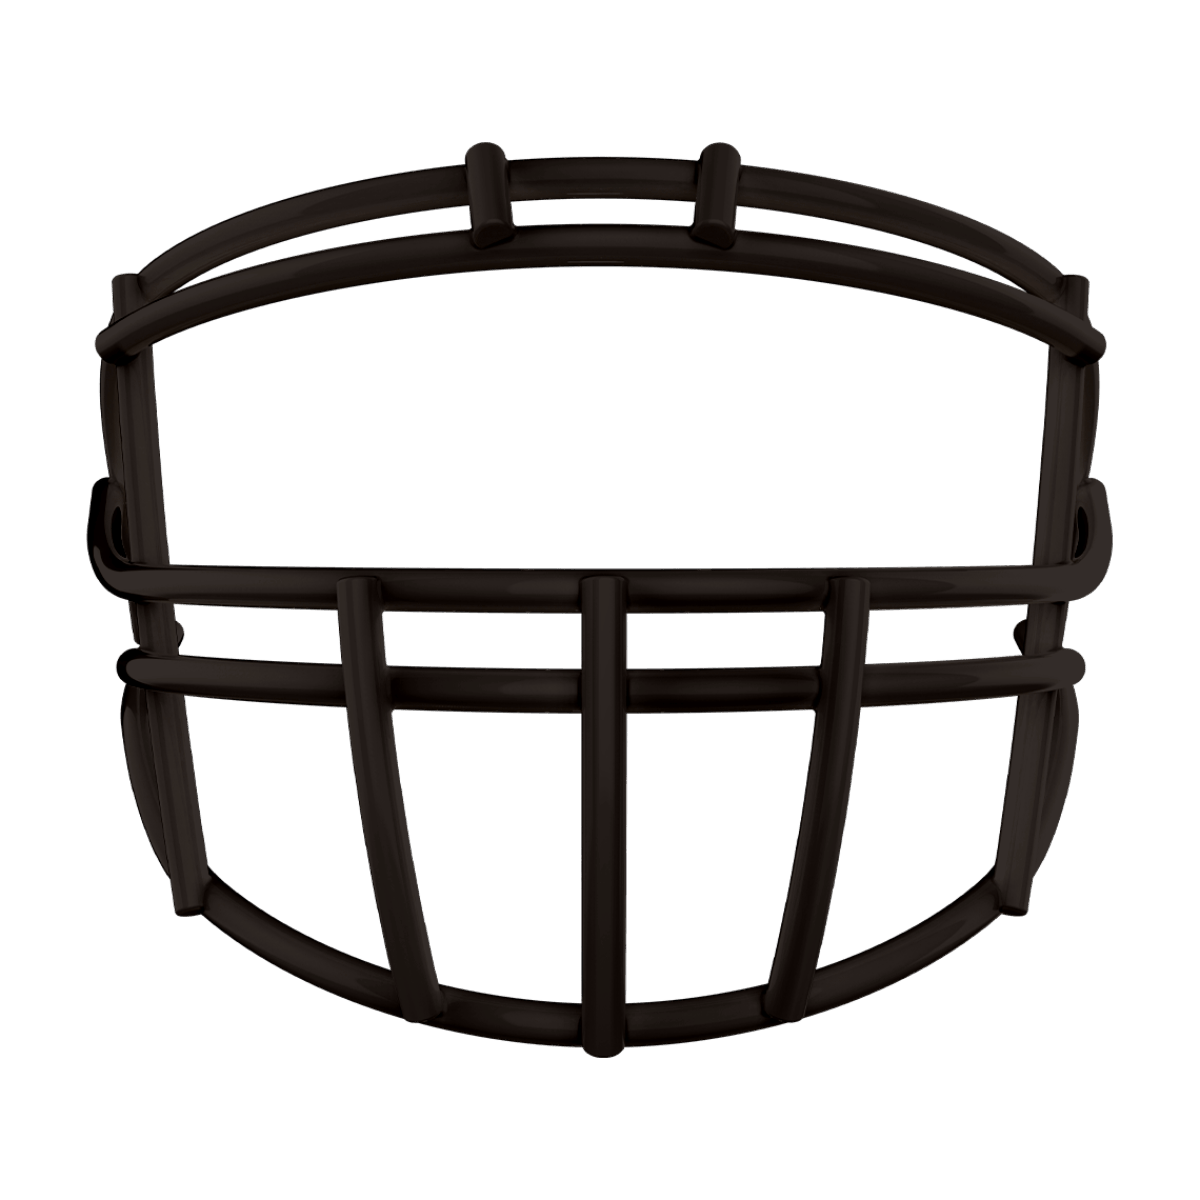 Black XRS-22 face mask for football helmet.